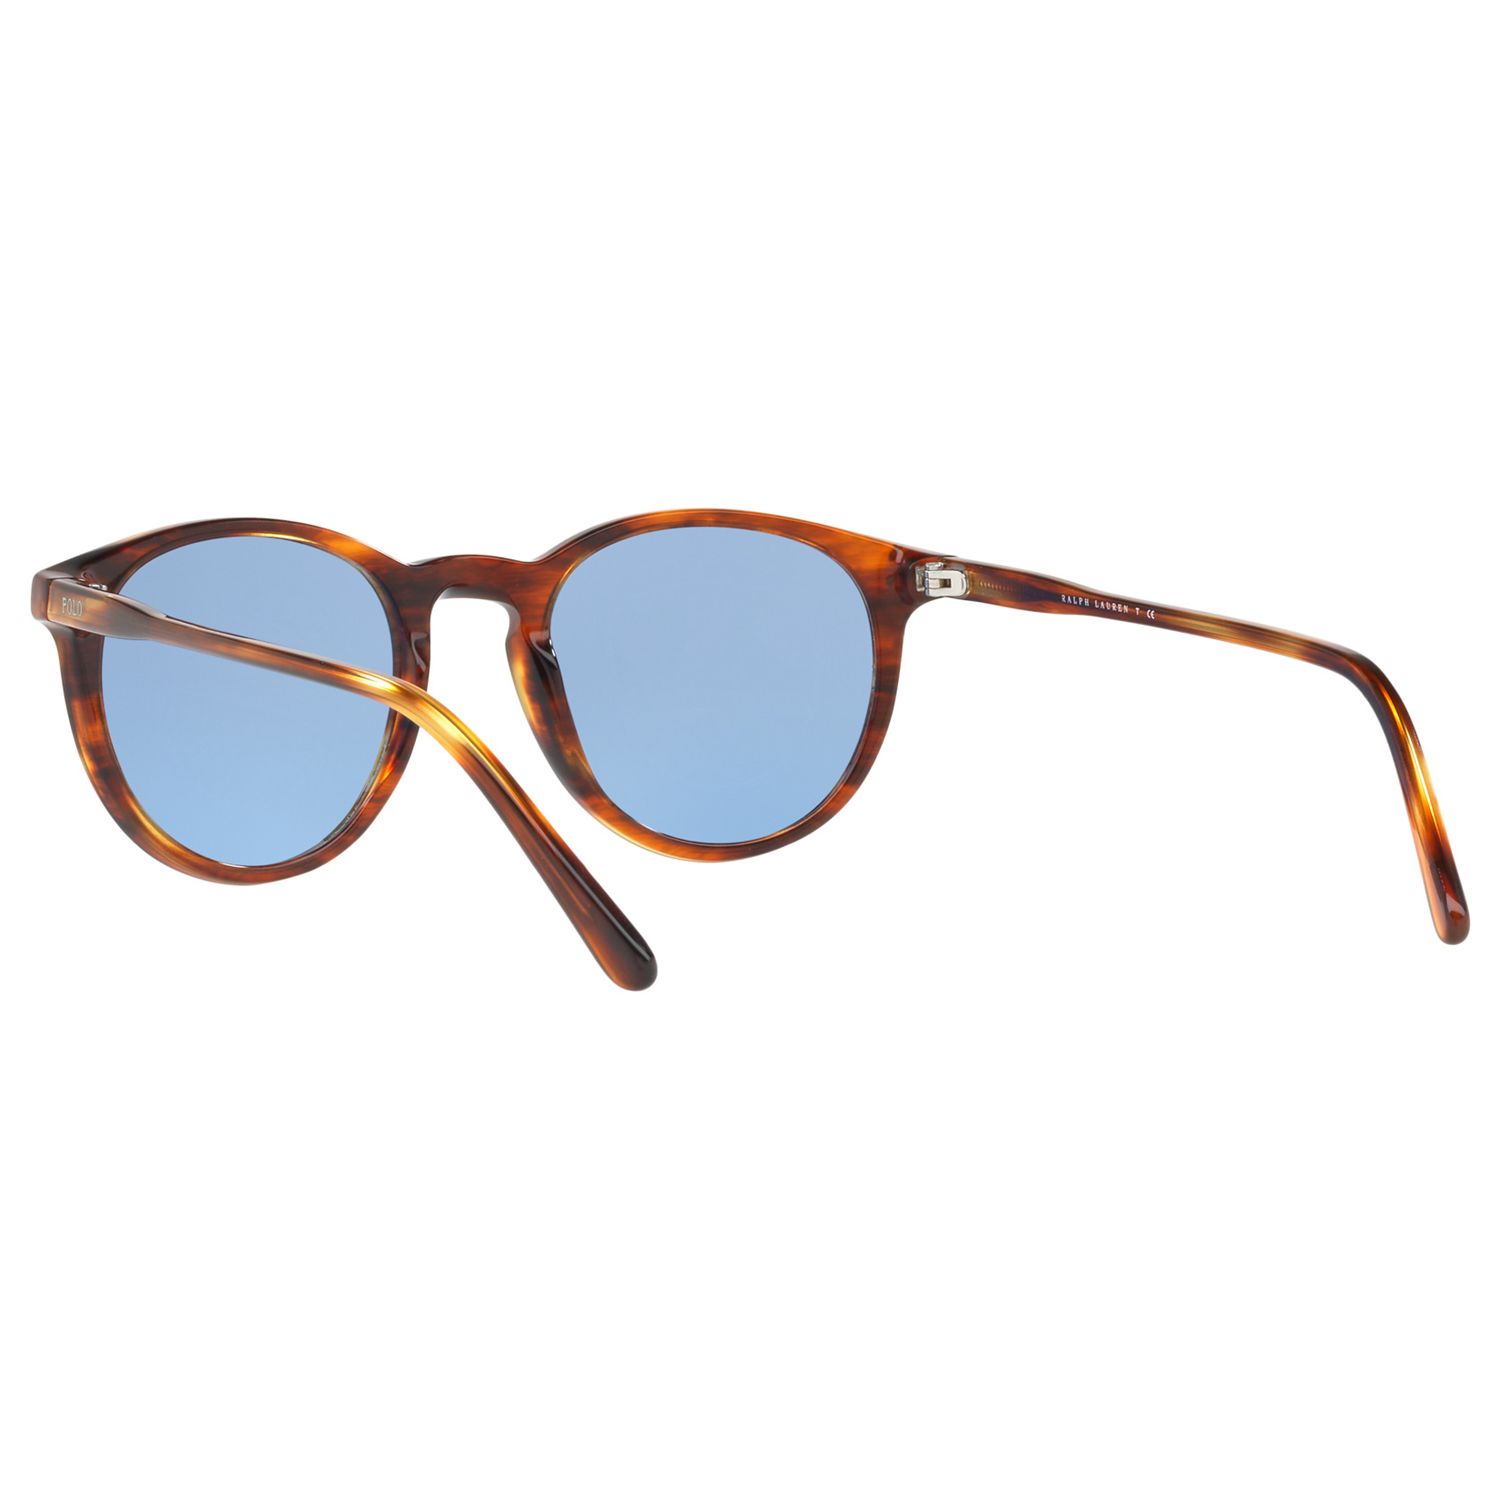 Polo Ralph Lauren PH4110 Men's Oval Sunglasses, Havana/Light Blue at ...